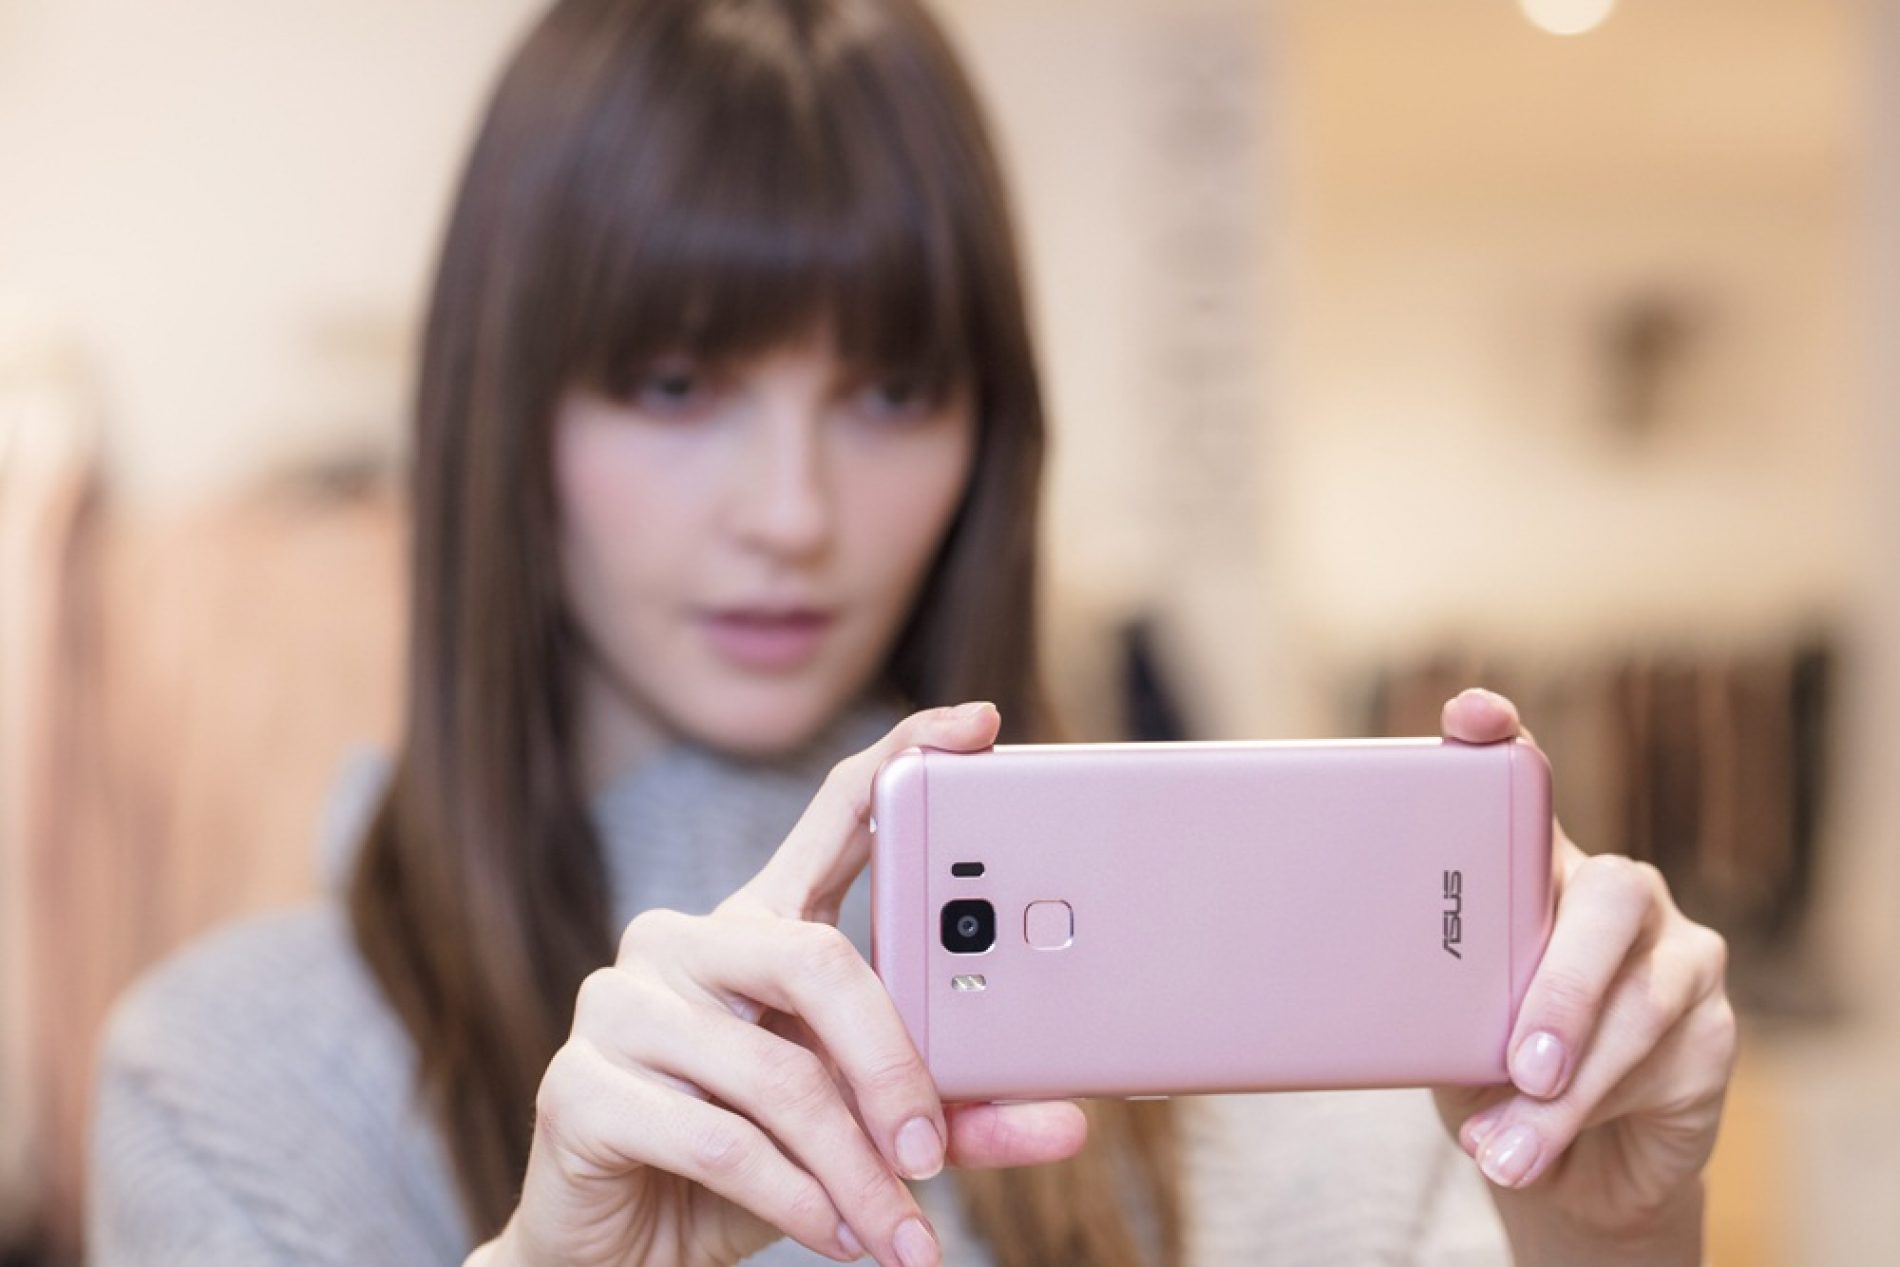 ASUS Zenfone 3 Max, Smartphone #GaAdaMatinya Hadir Dengan Warna Pink